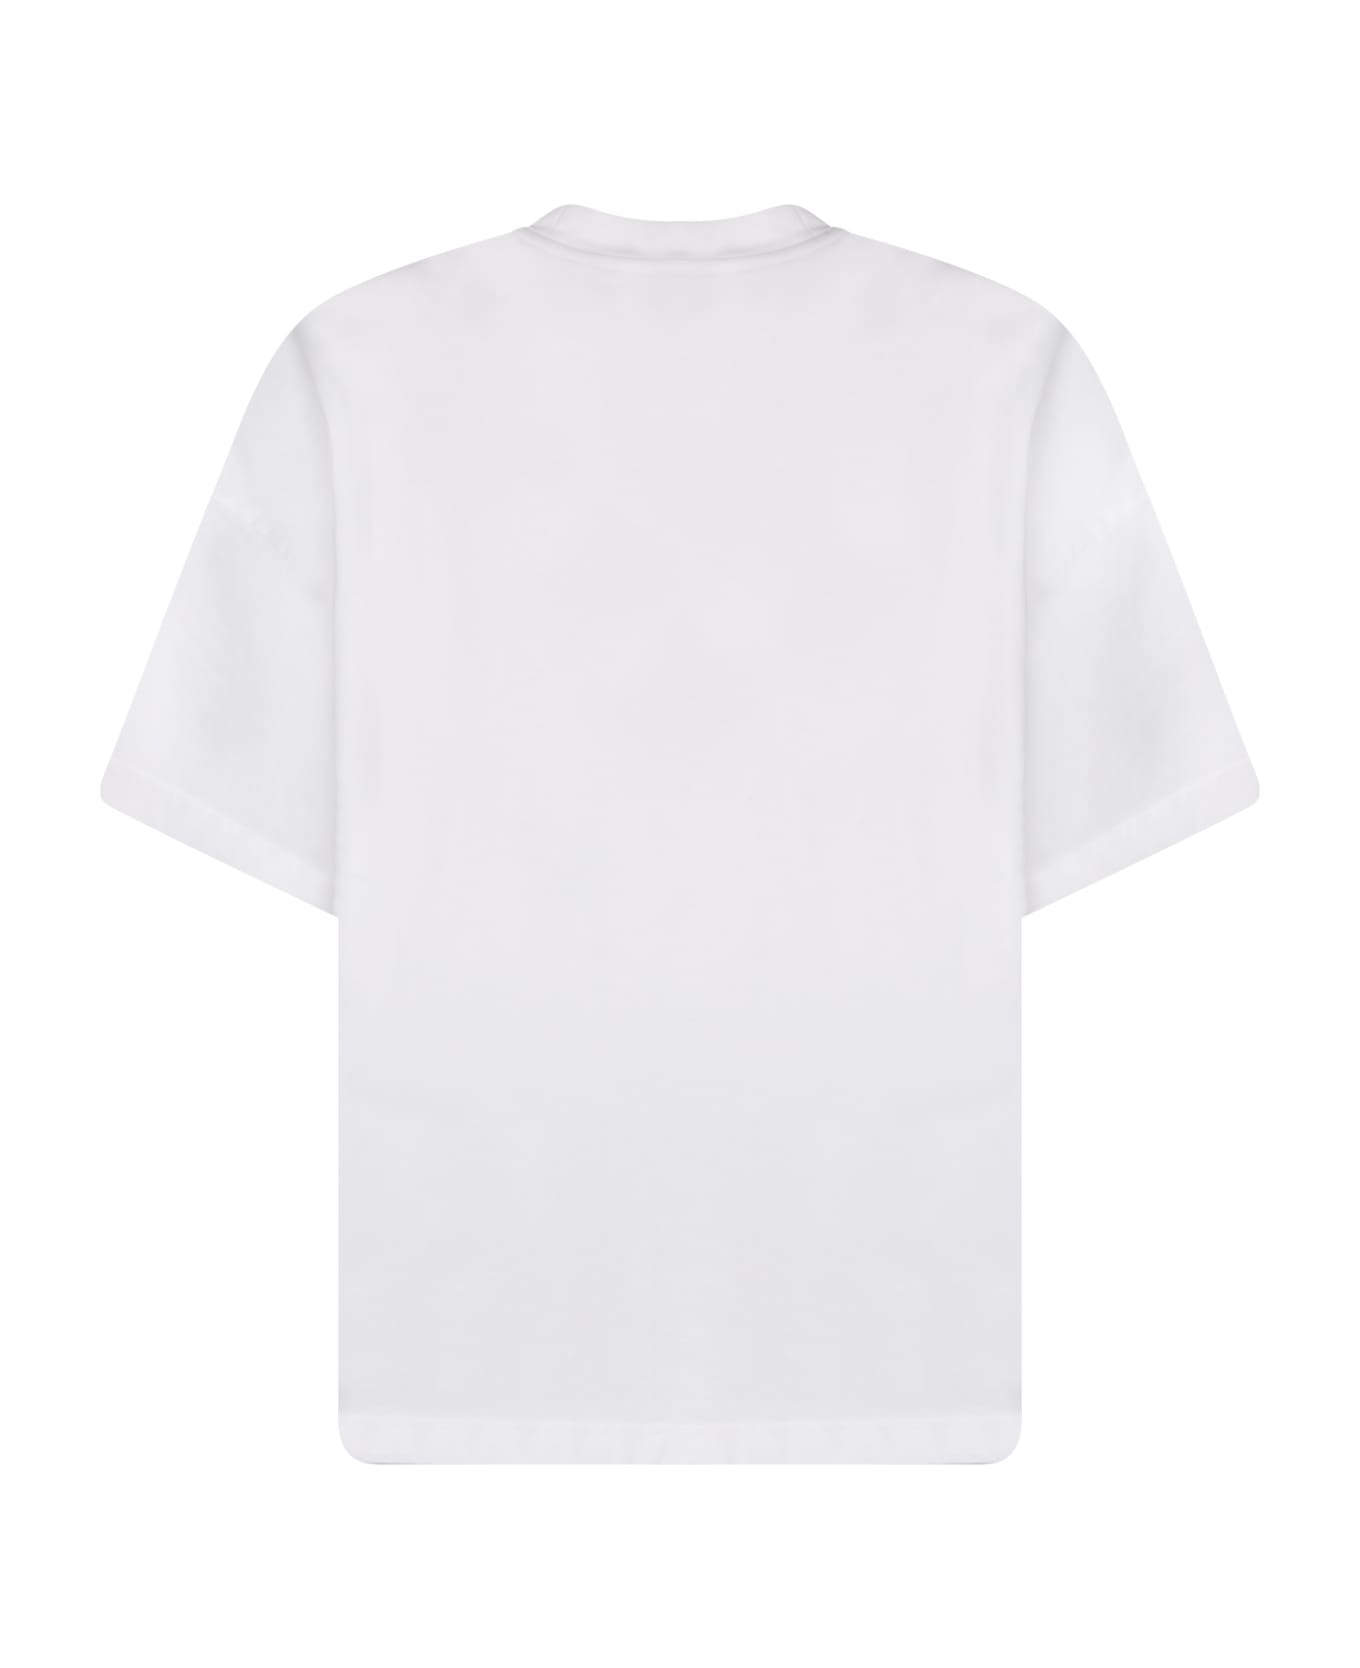 Bonsai Salty Box White T-shirt - White